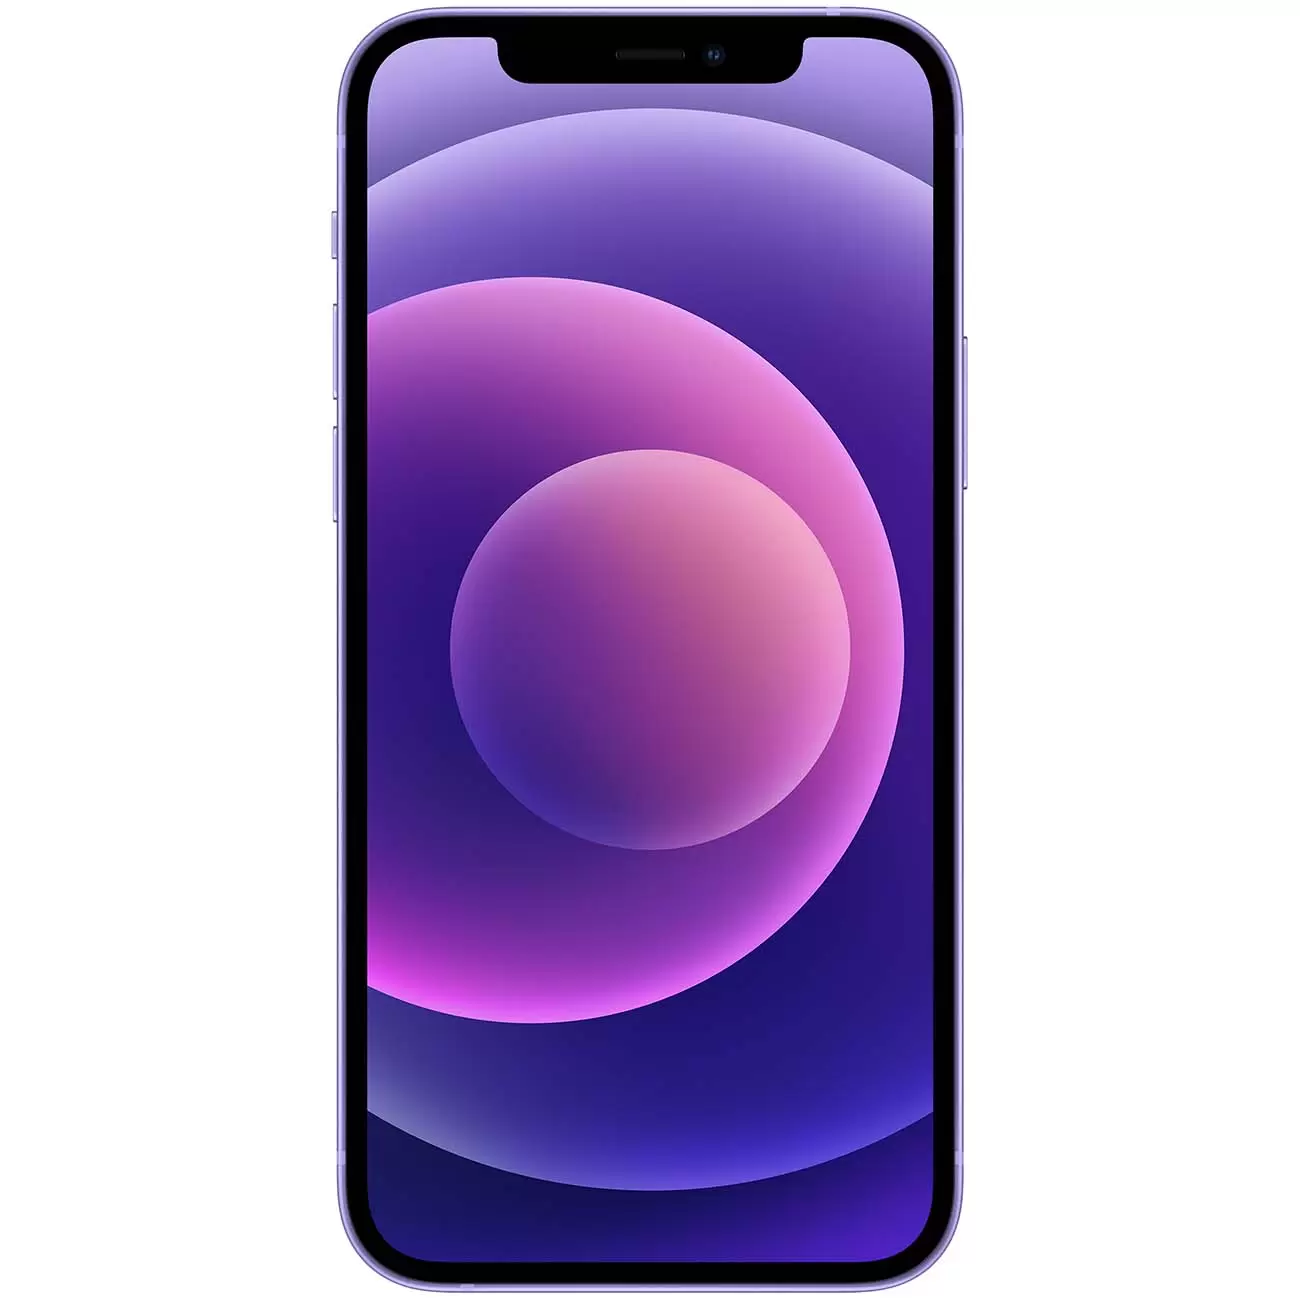 Купить смартфон apple iphone 12 64gb purple Apple iPhone 12 в официальном магазине Apple, Samsung, Xiaomi. iPixel.ru Купить, заказ, кредит, рассрочка, отзывы,  характеристики, цена,  фотографии, в подарок.